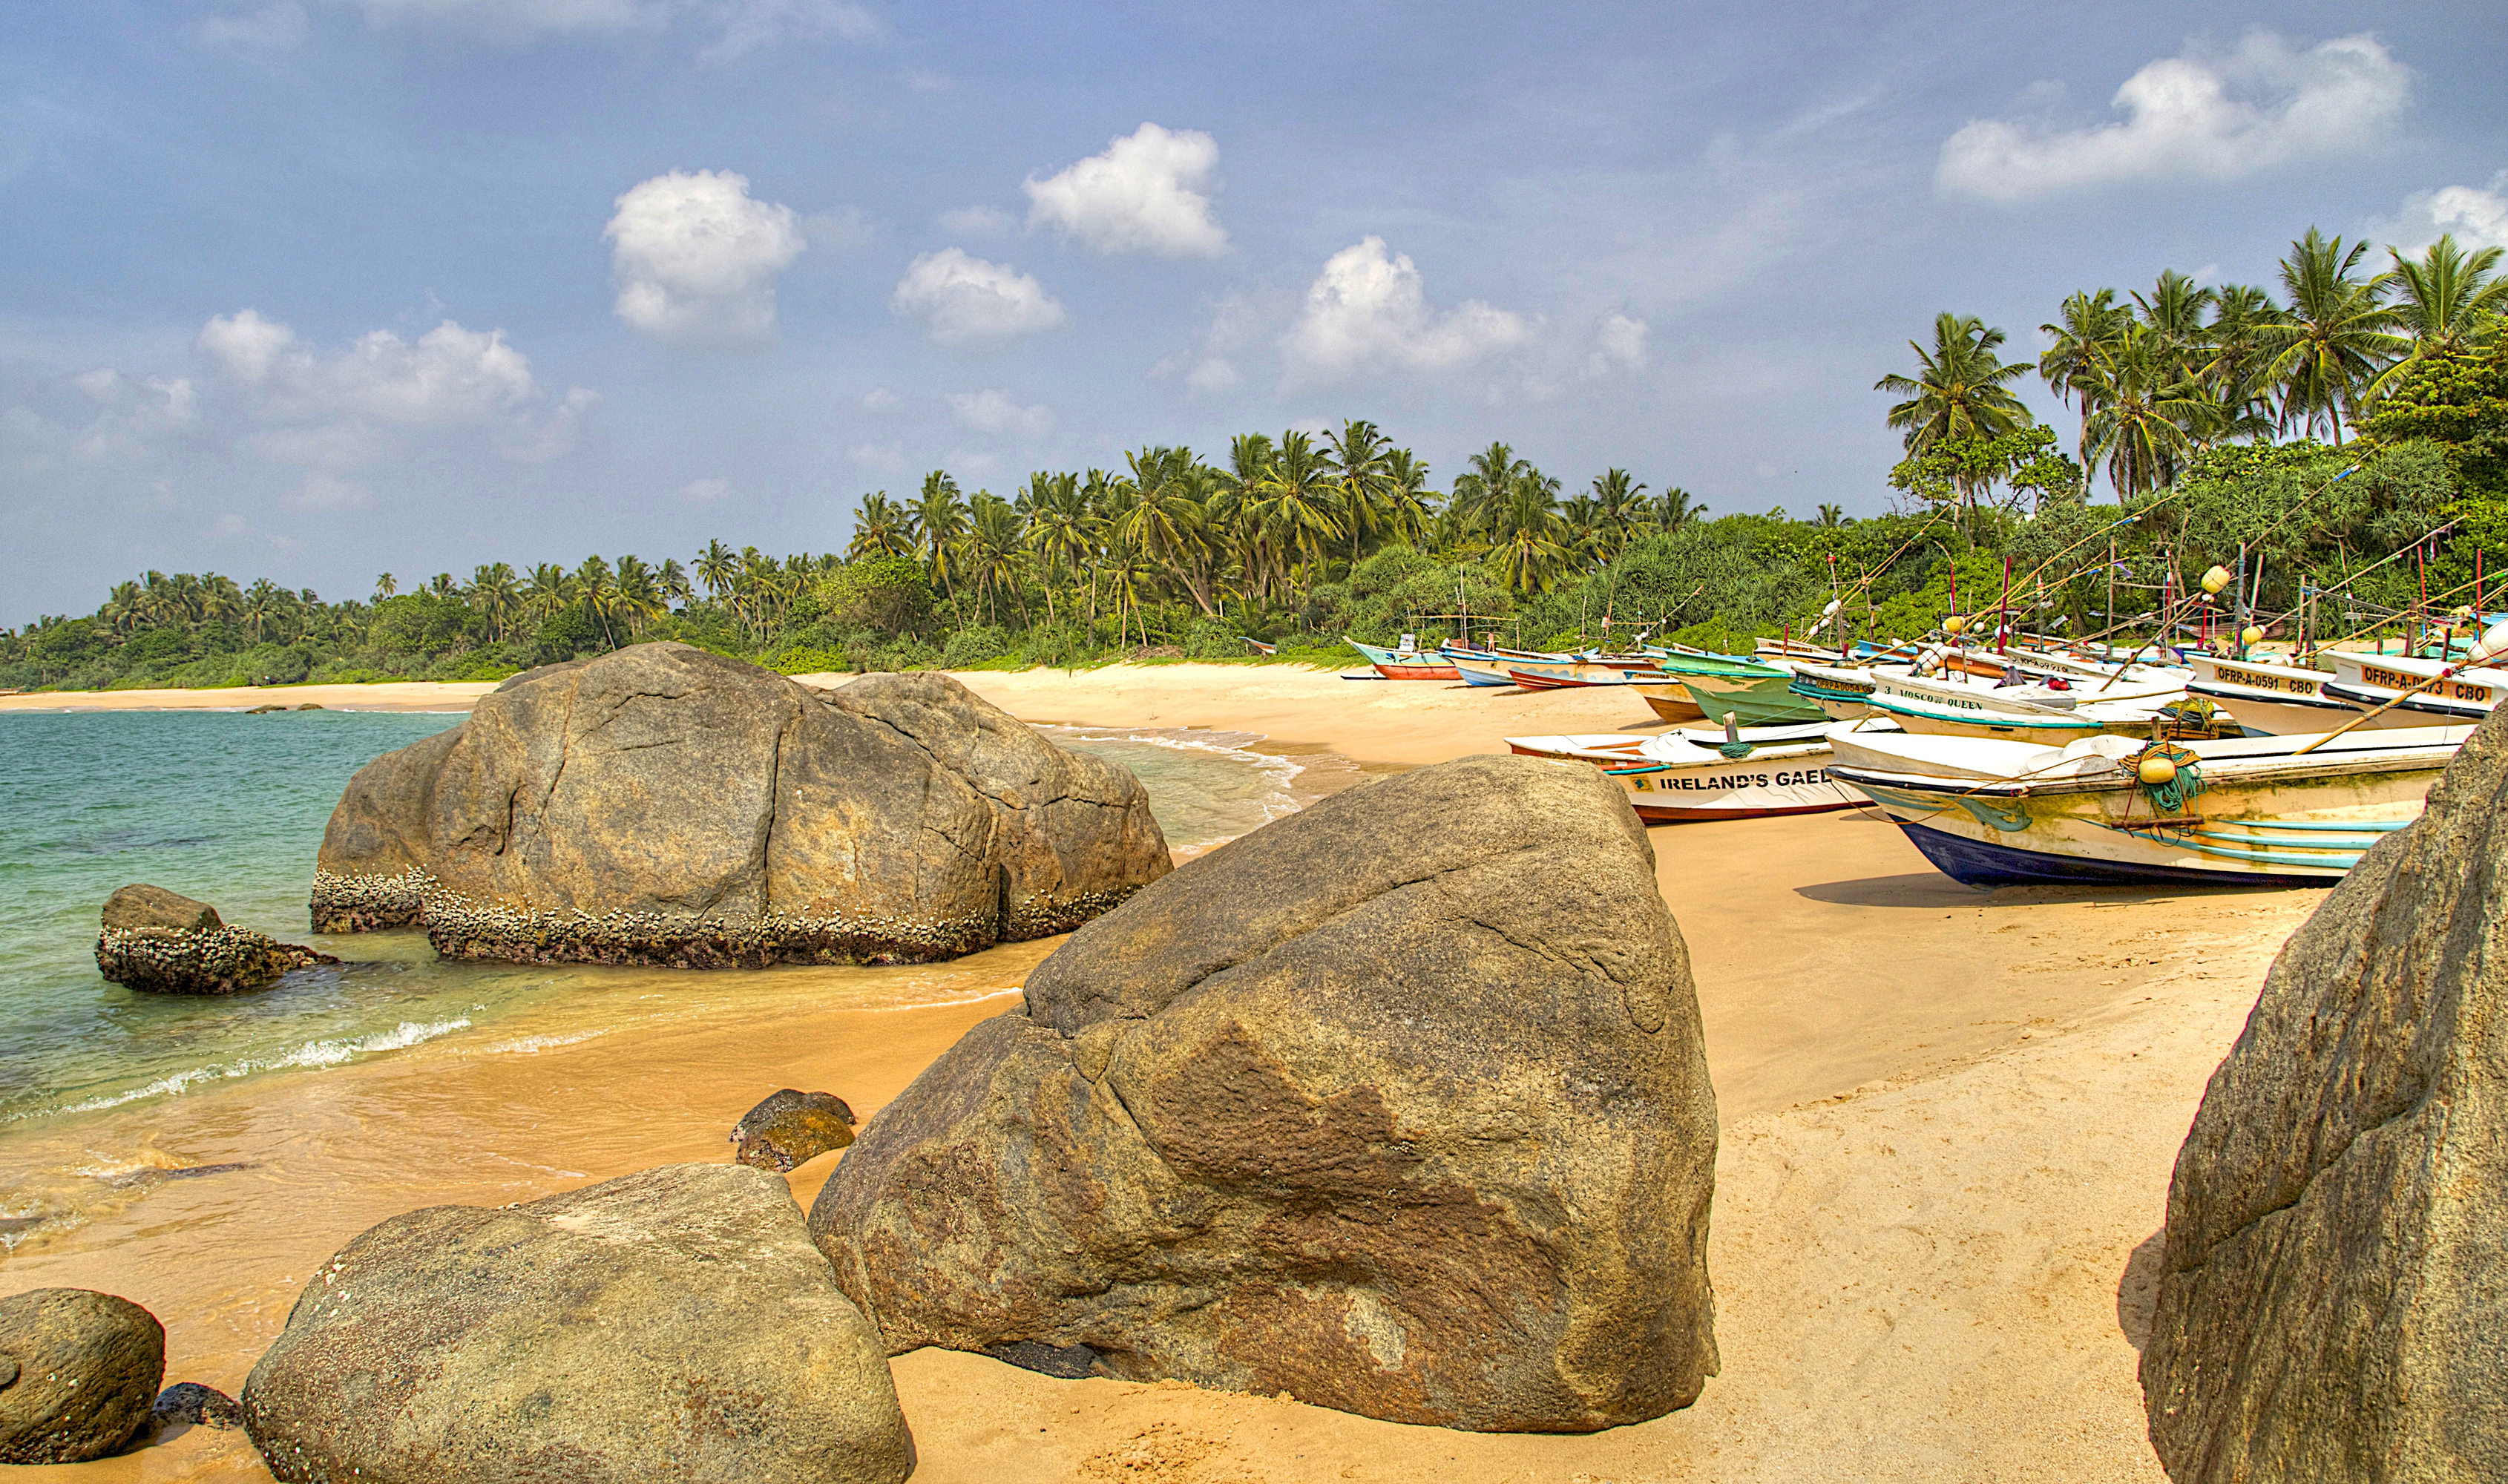 Шри ланка 20. Берег острова Шри Ланка. Тринкомали Шри Ланка. Негомбо Шри Ланка. Шри Ланка Тринкомали пляж море.